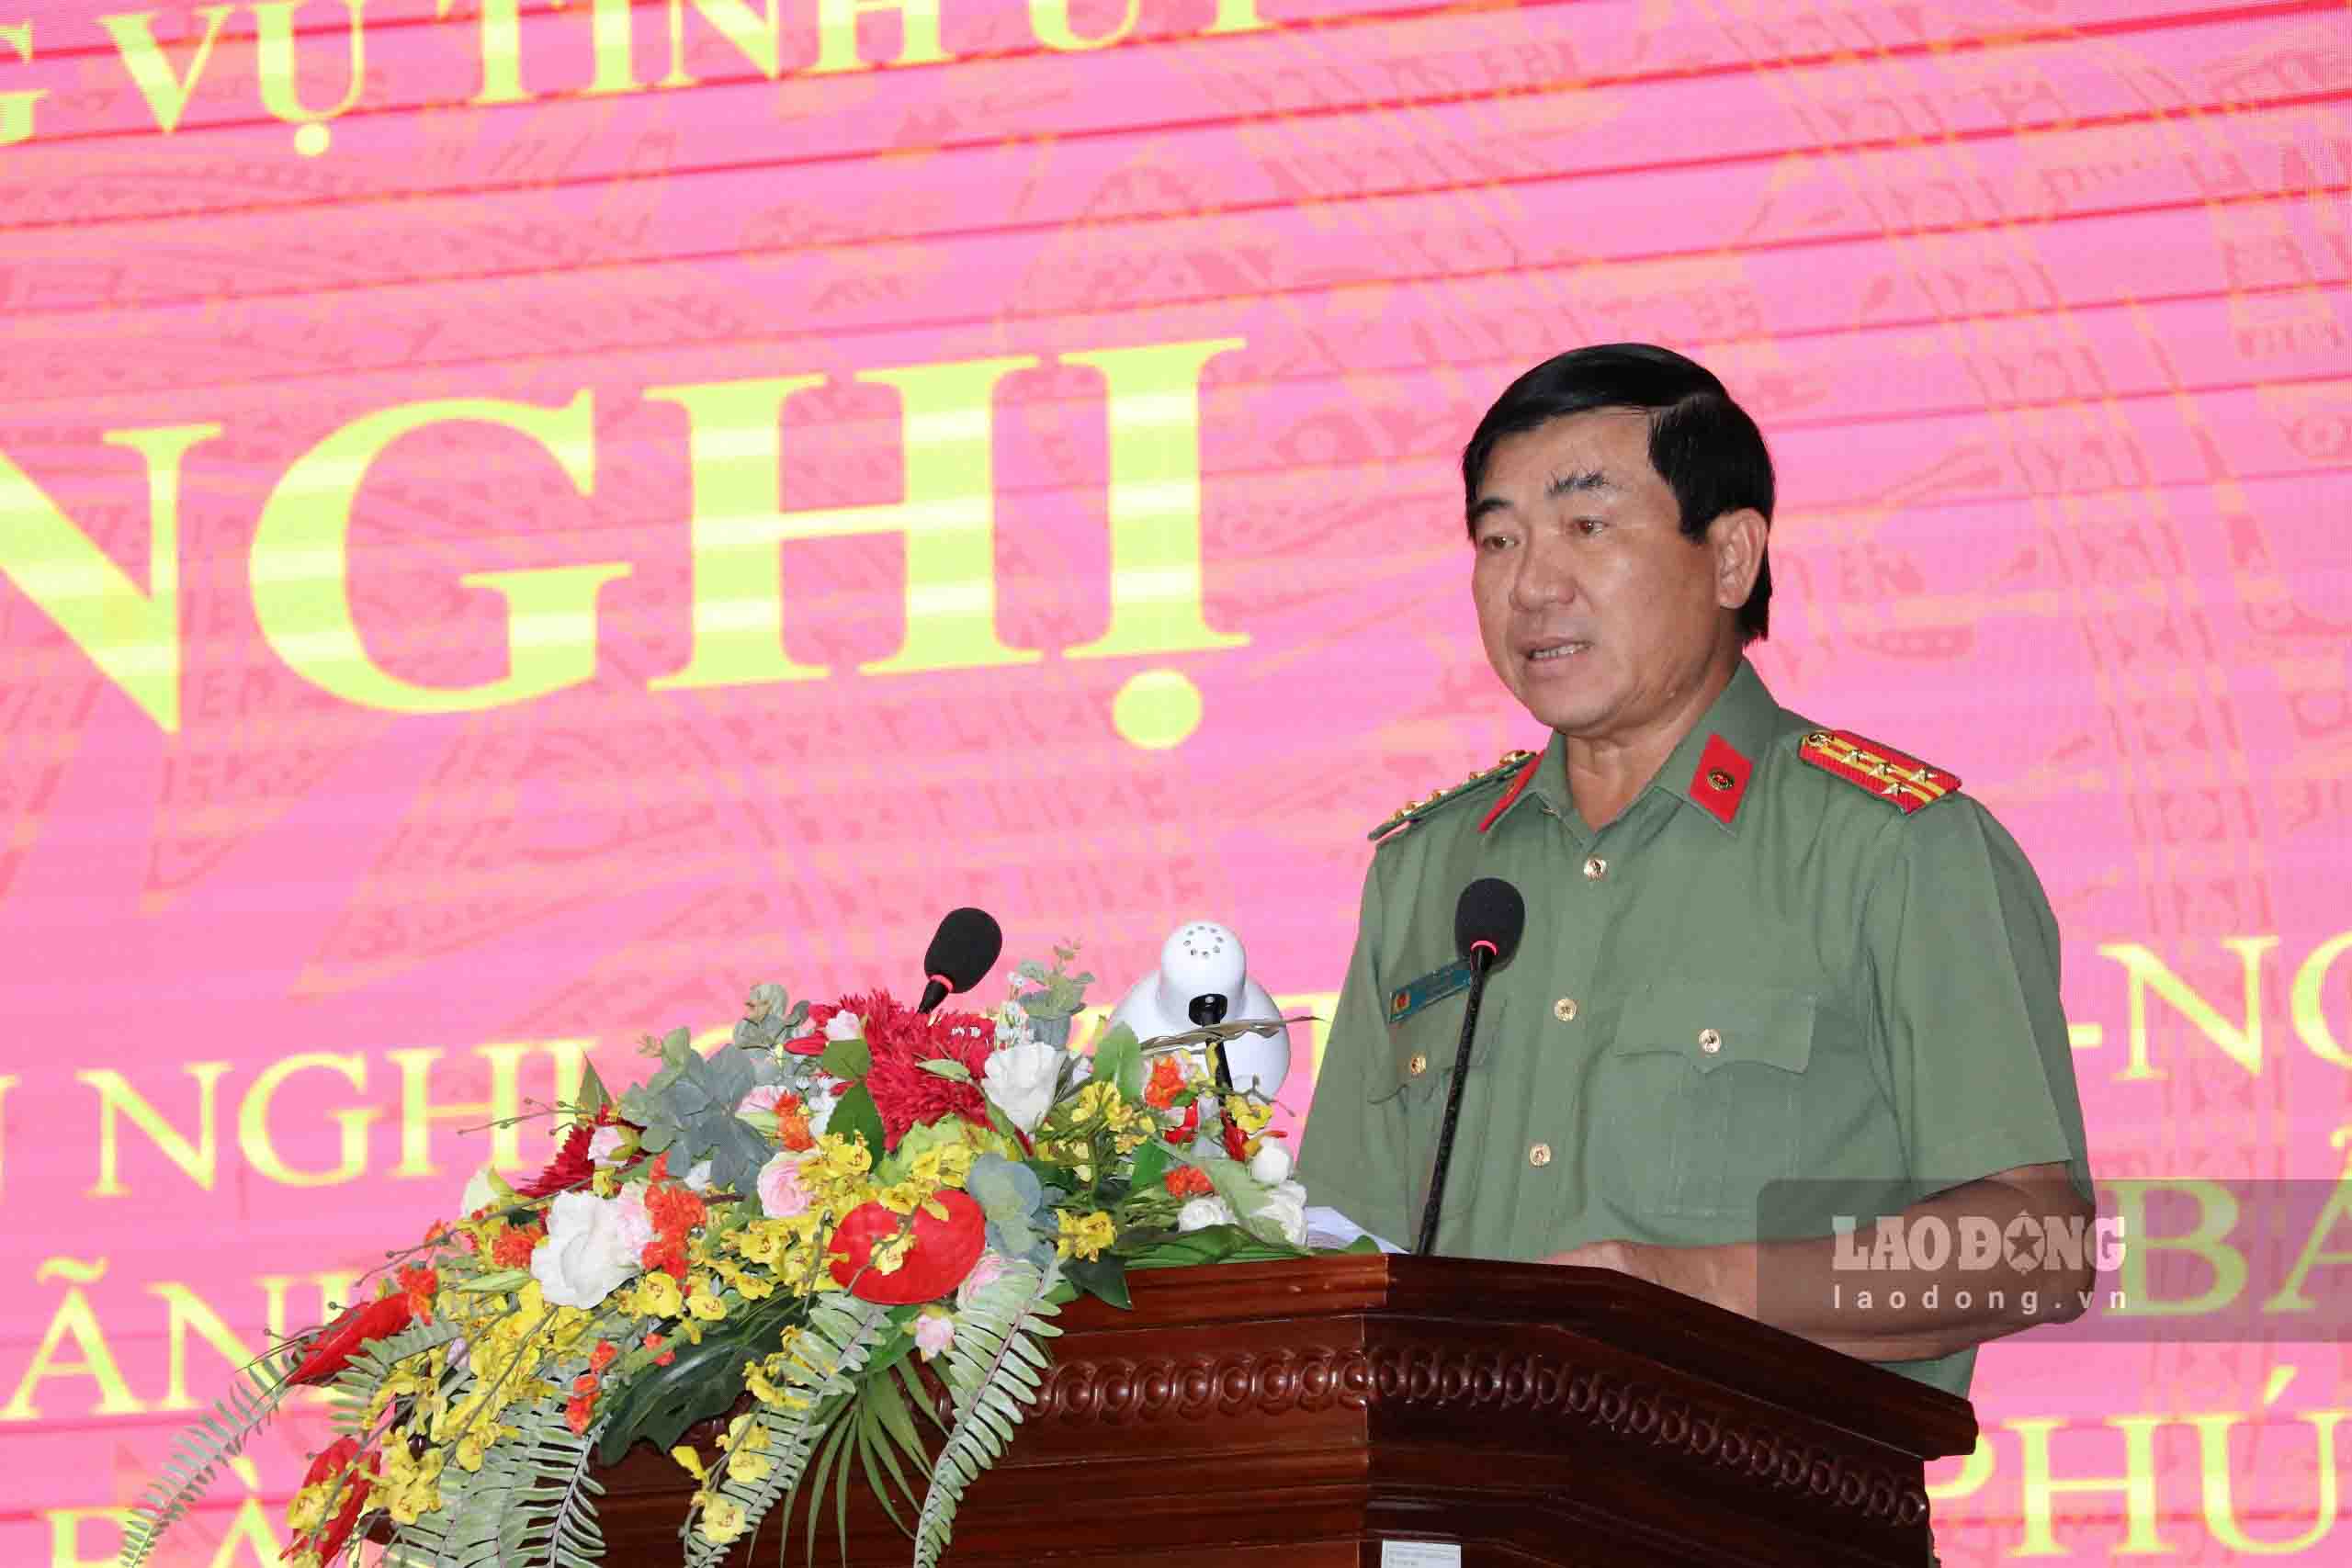 Đại tá Nguyễn Văn Hận – Giám đốc Công an tỉnh Kiên Giang phát biểu tại hội nghị. Ảnh: Tiến Dũng